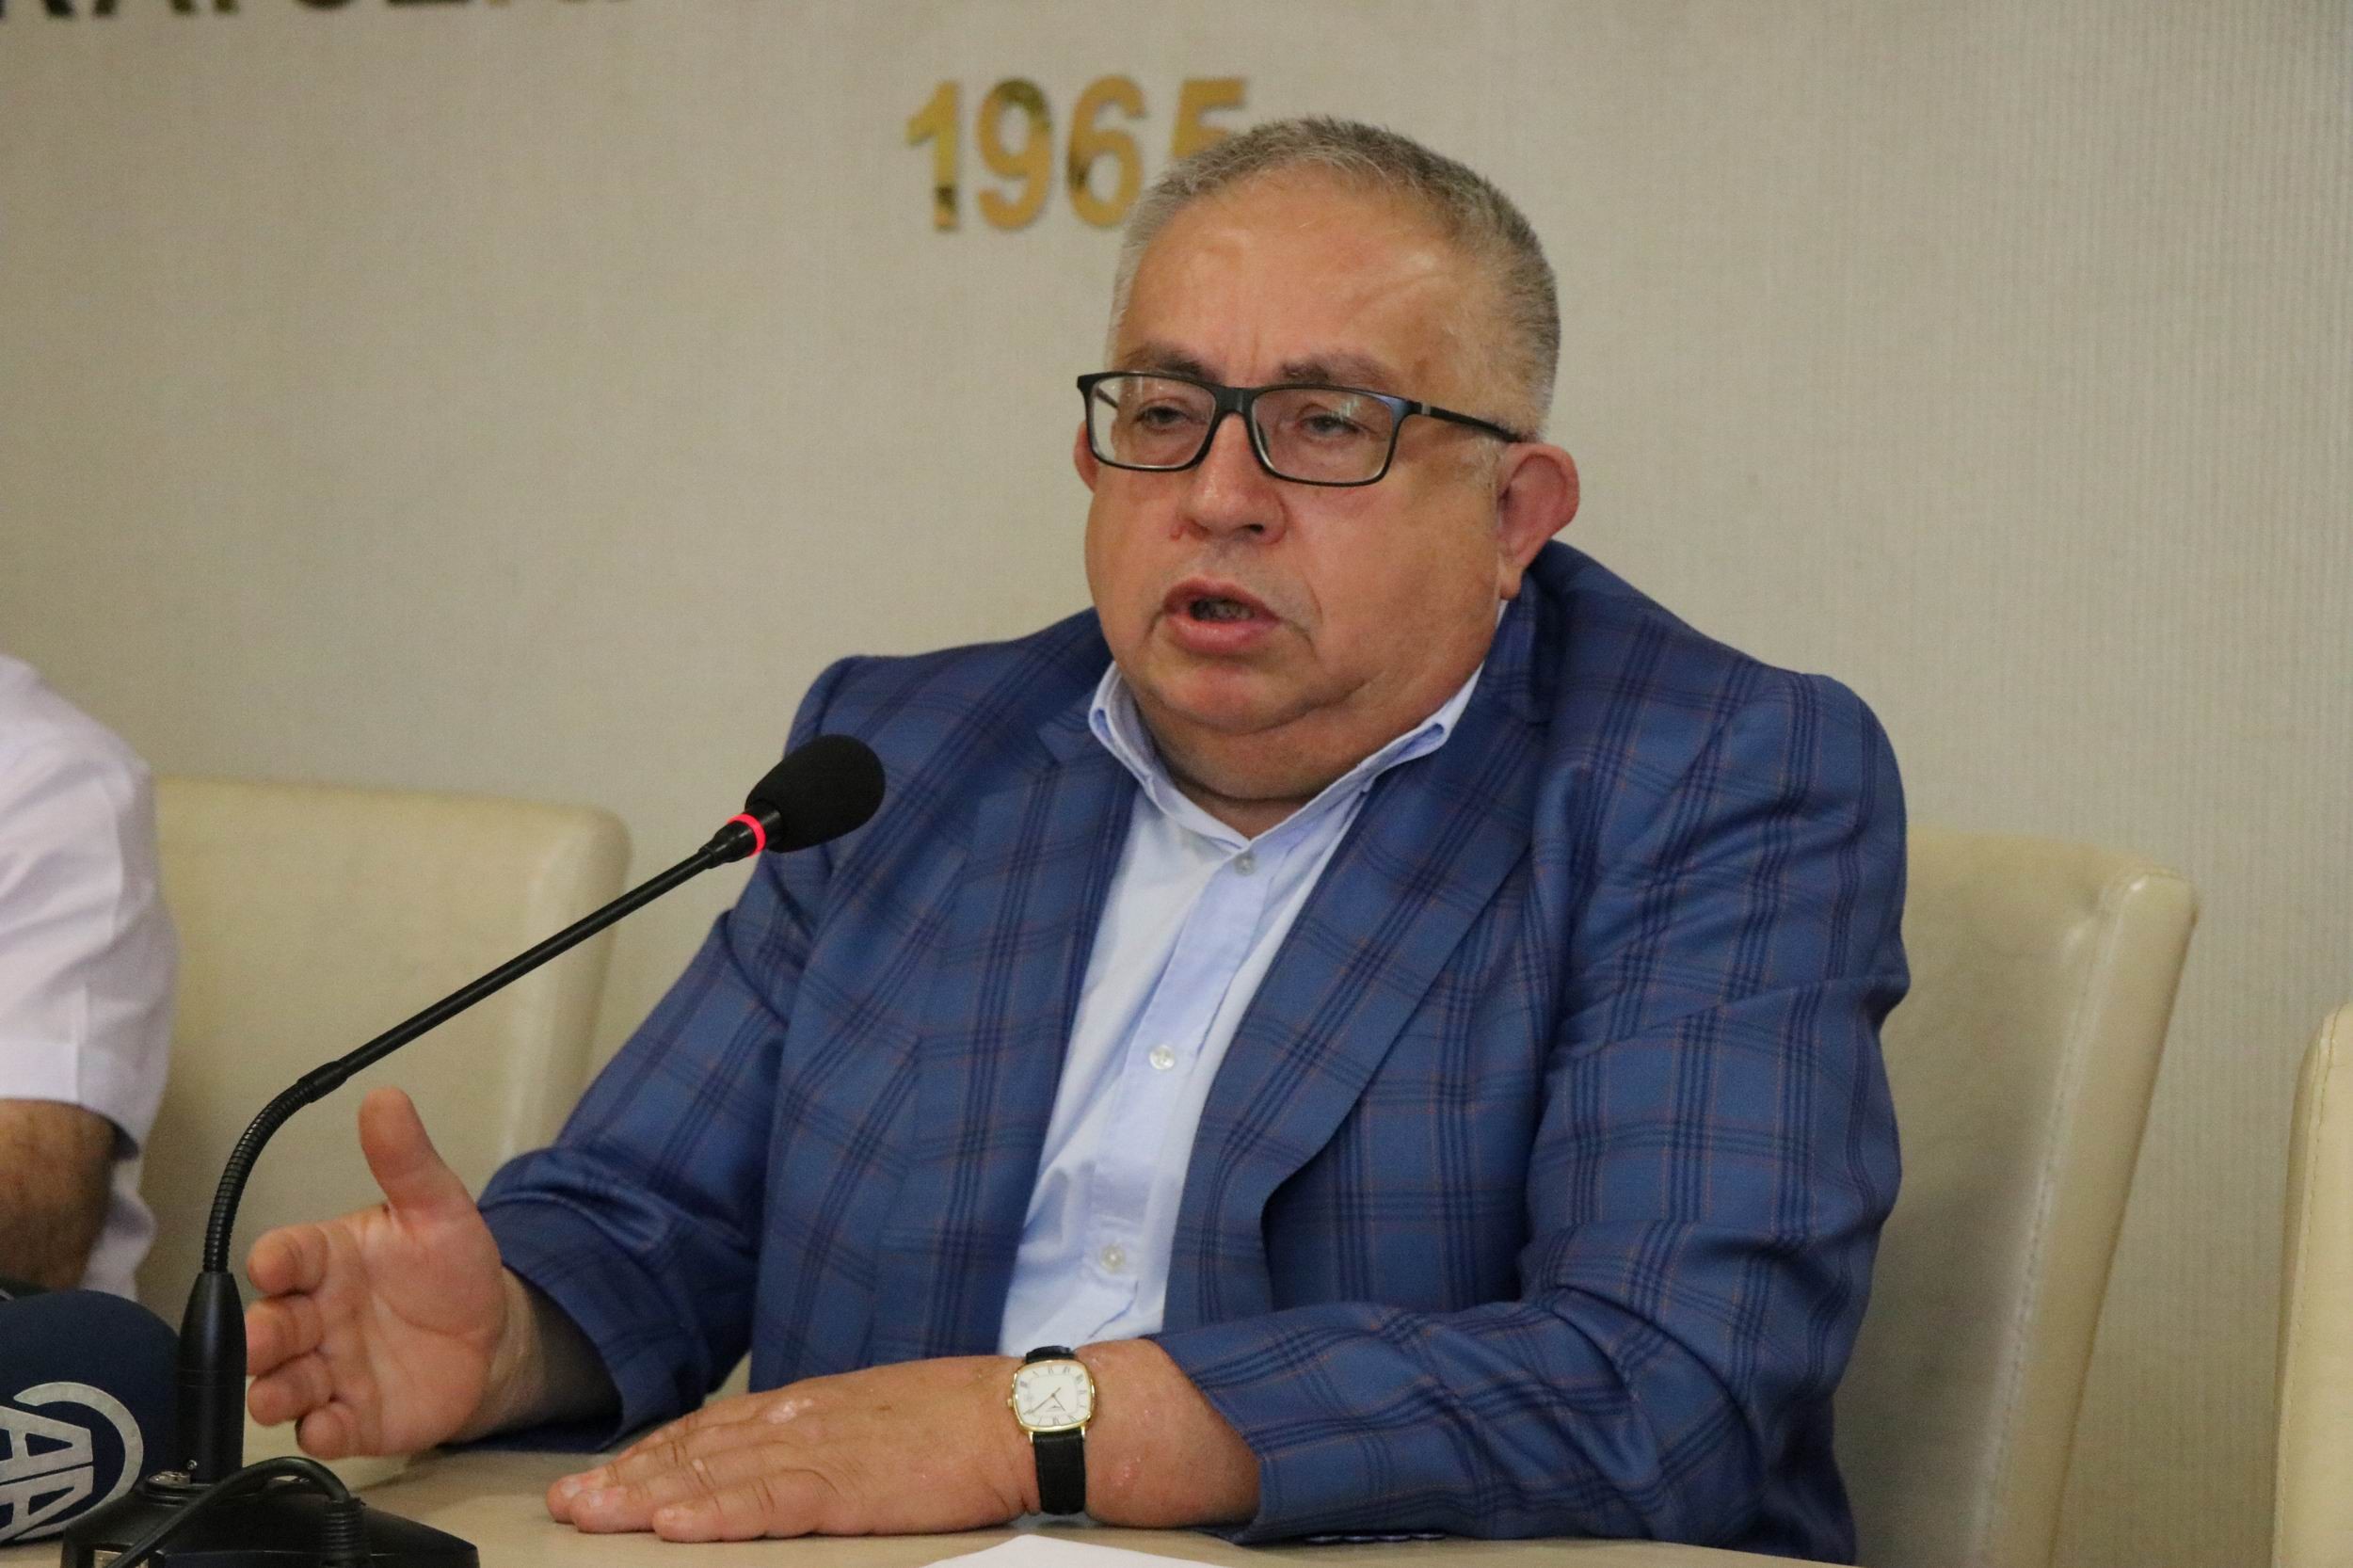 Kayseri Ticaret Borsası Başkanı Şaban Ünlü: “Kayseri’de yeterli miktarda kurbanlık hayvan var”